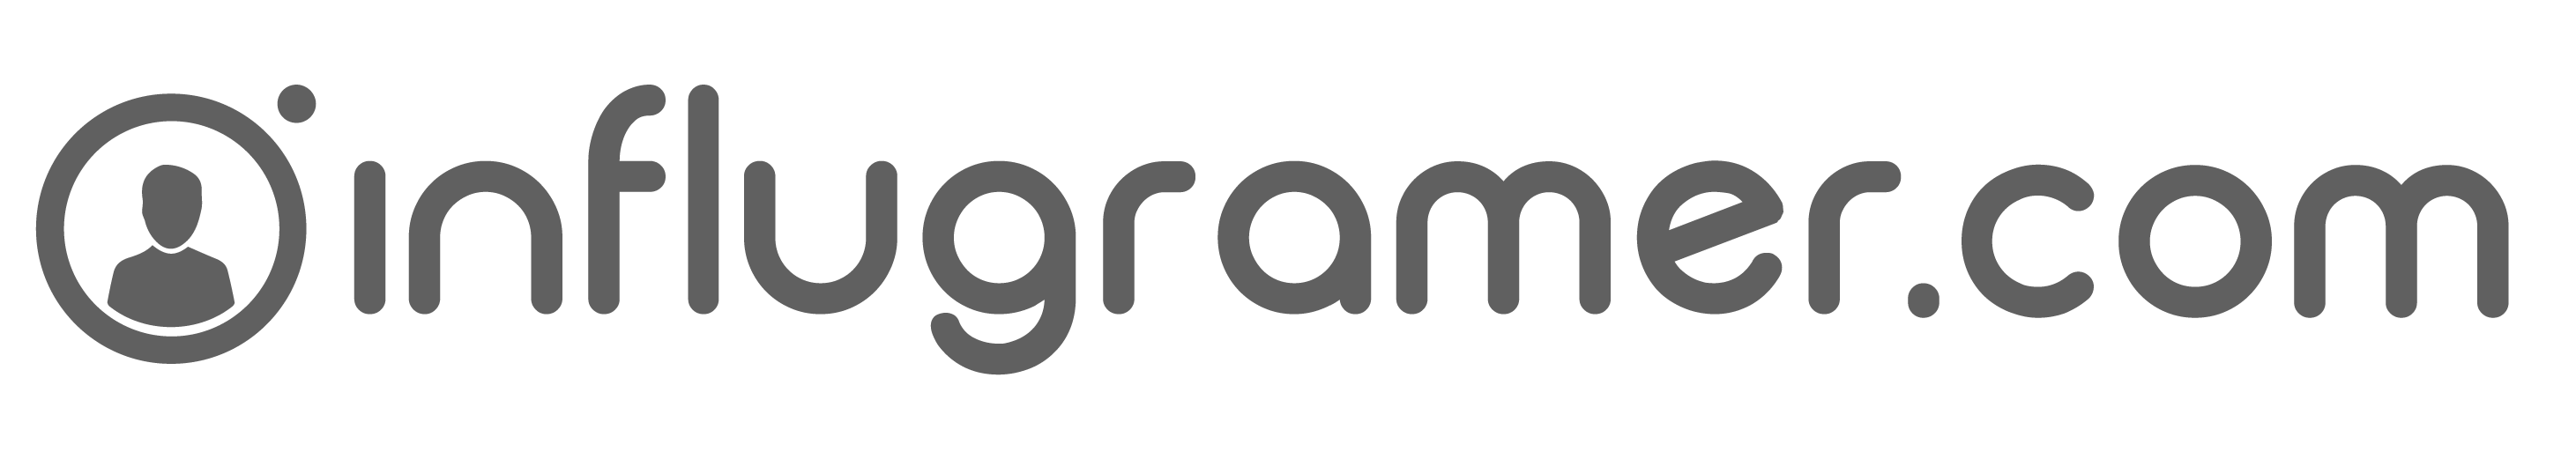 Logo Influgramer.com